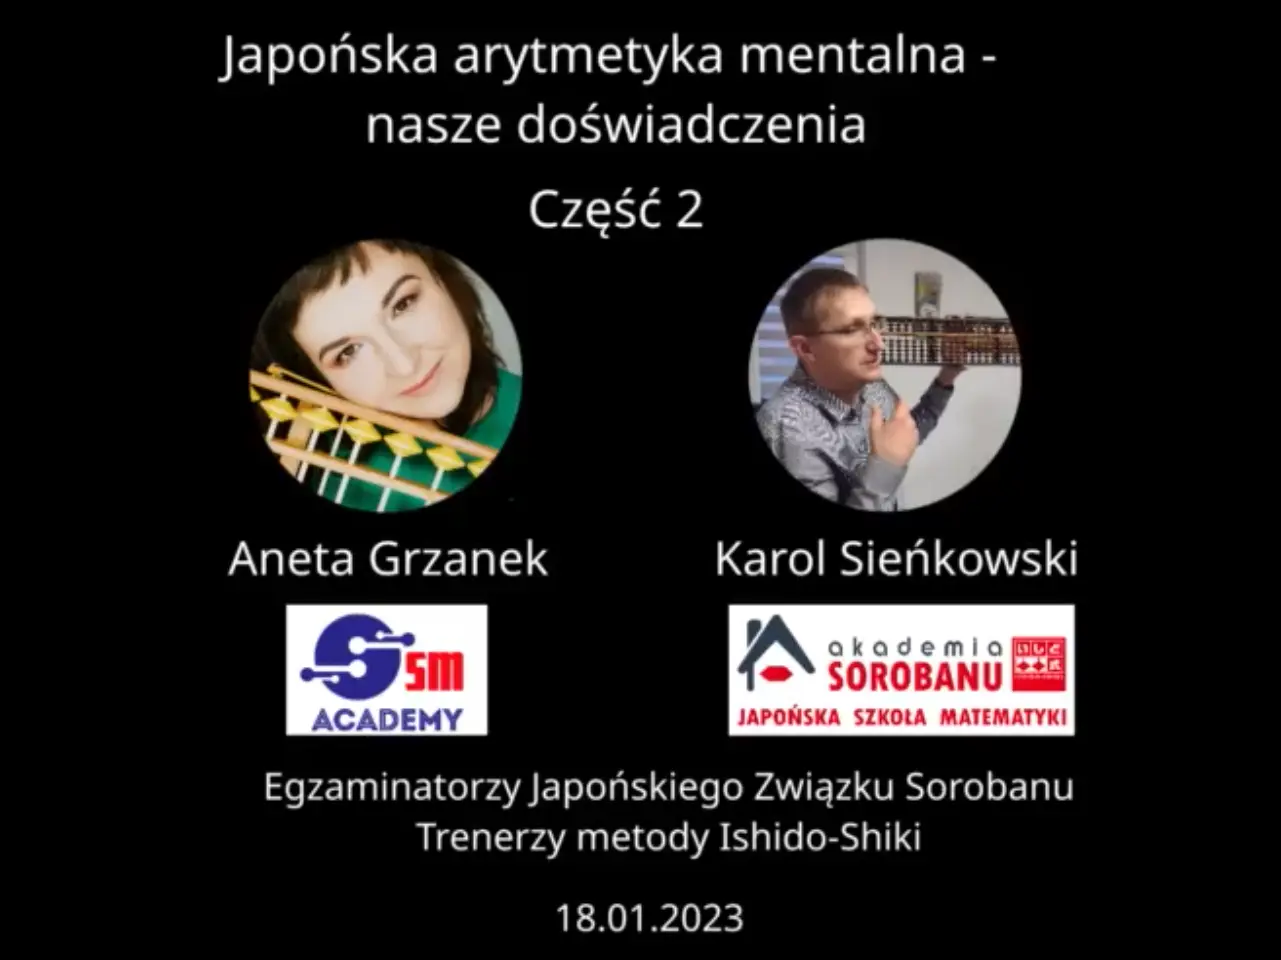 Rozmowa Aneta Grzanek i Karol Sieńkowski cz. 1